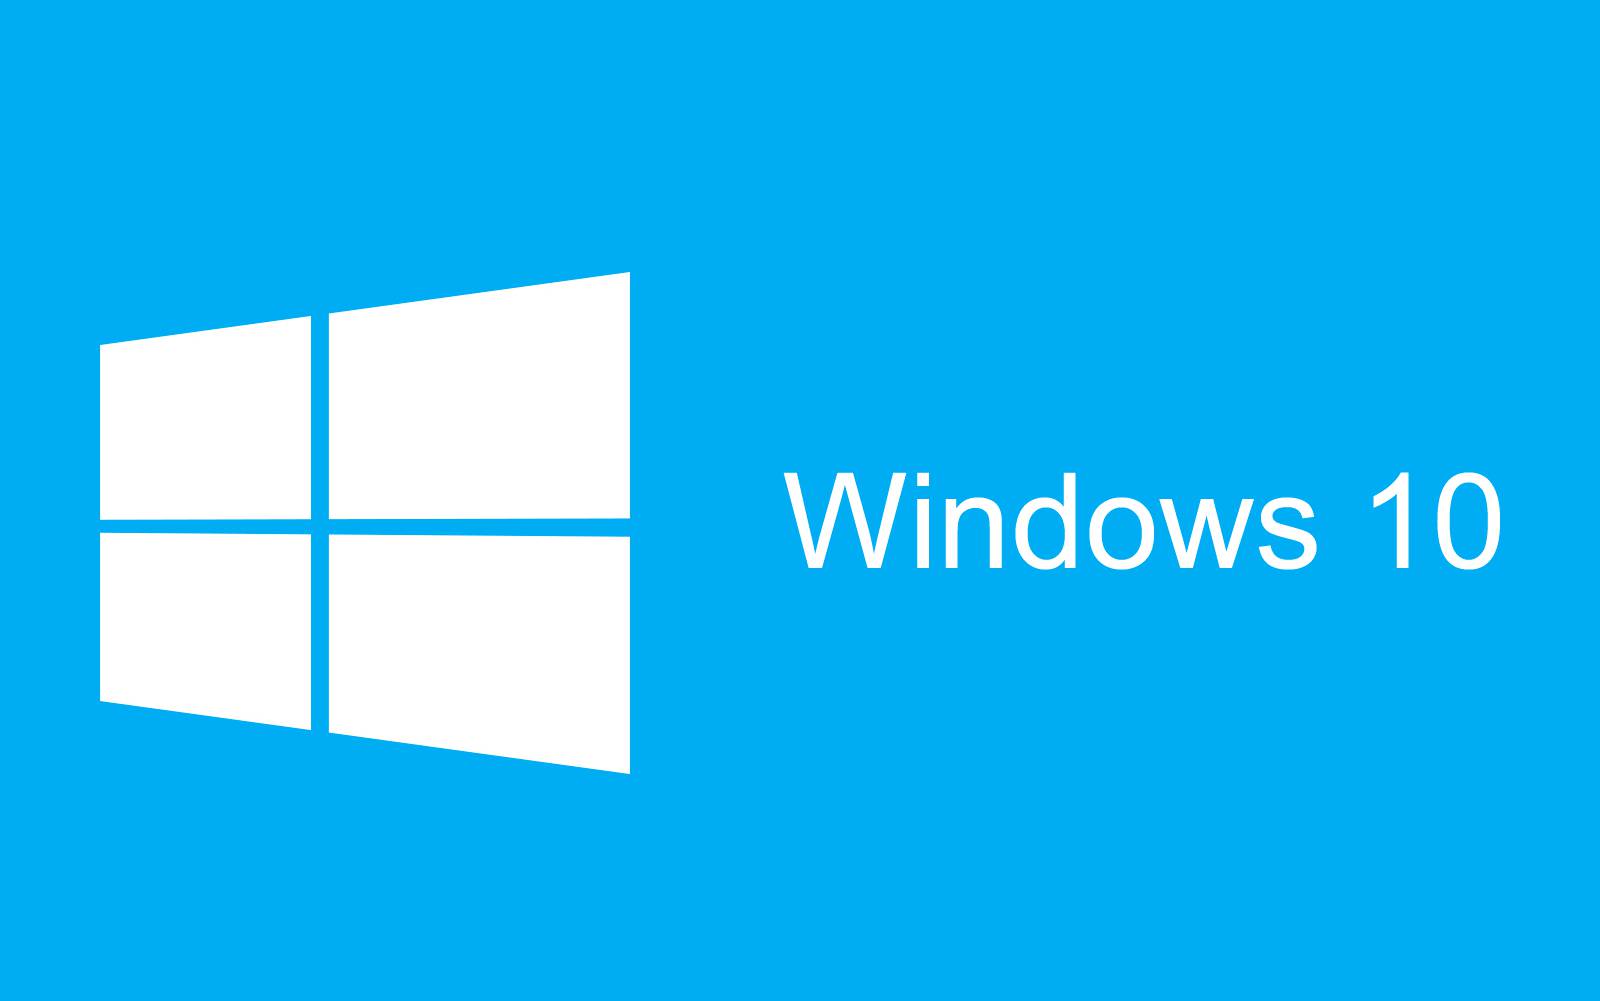 Windows 10-overdracht